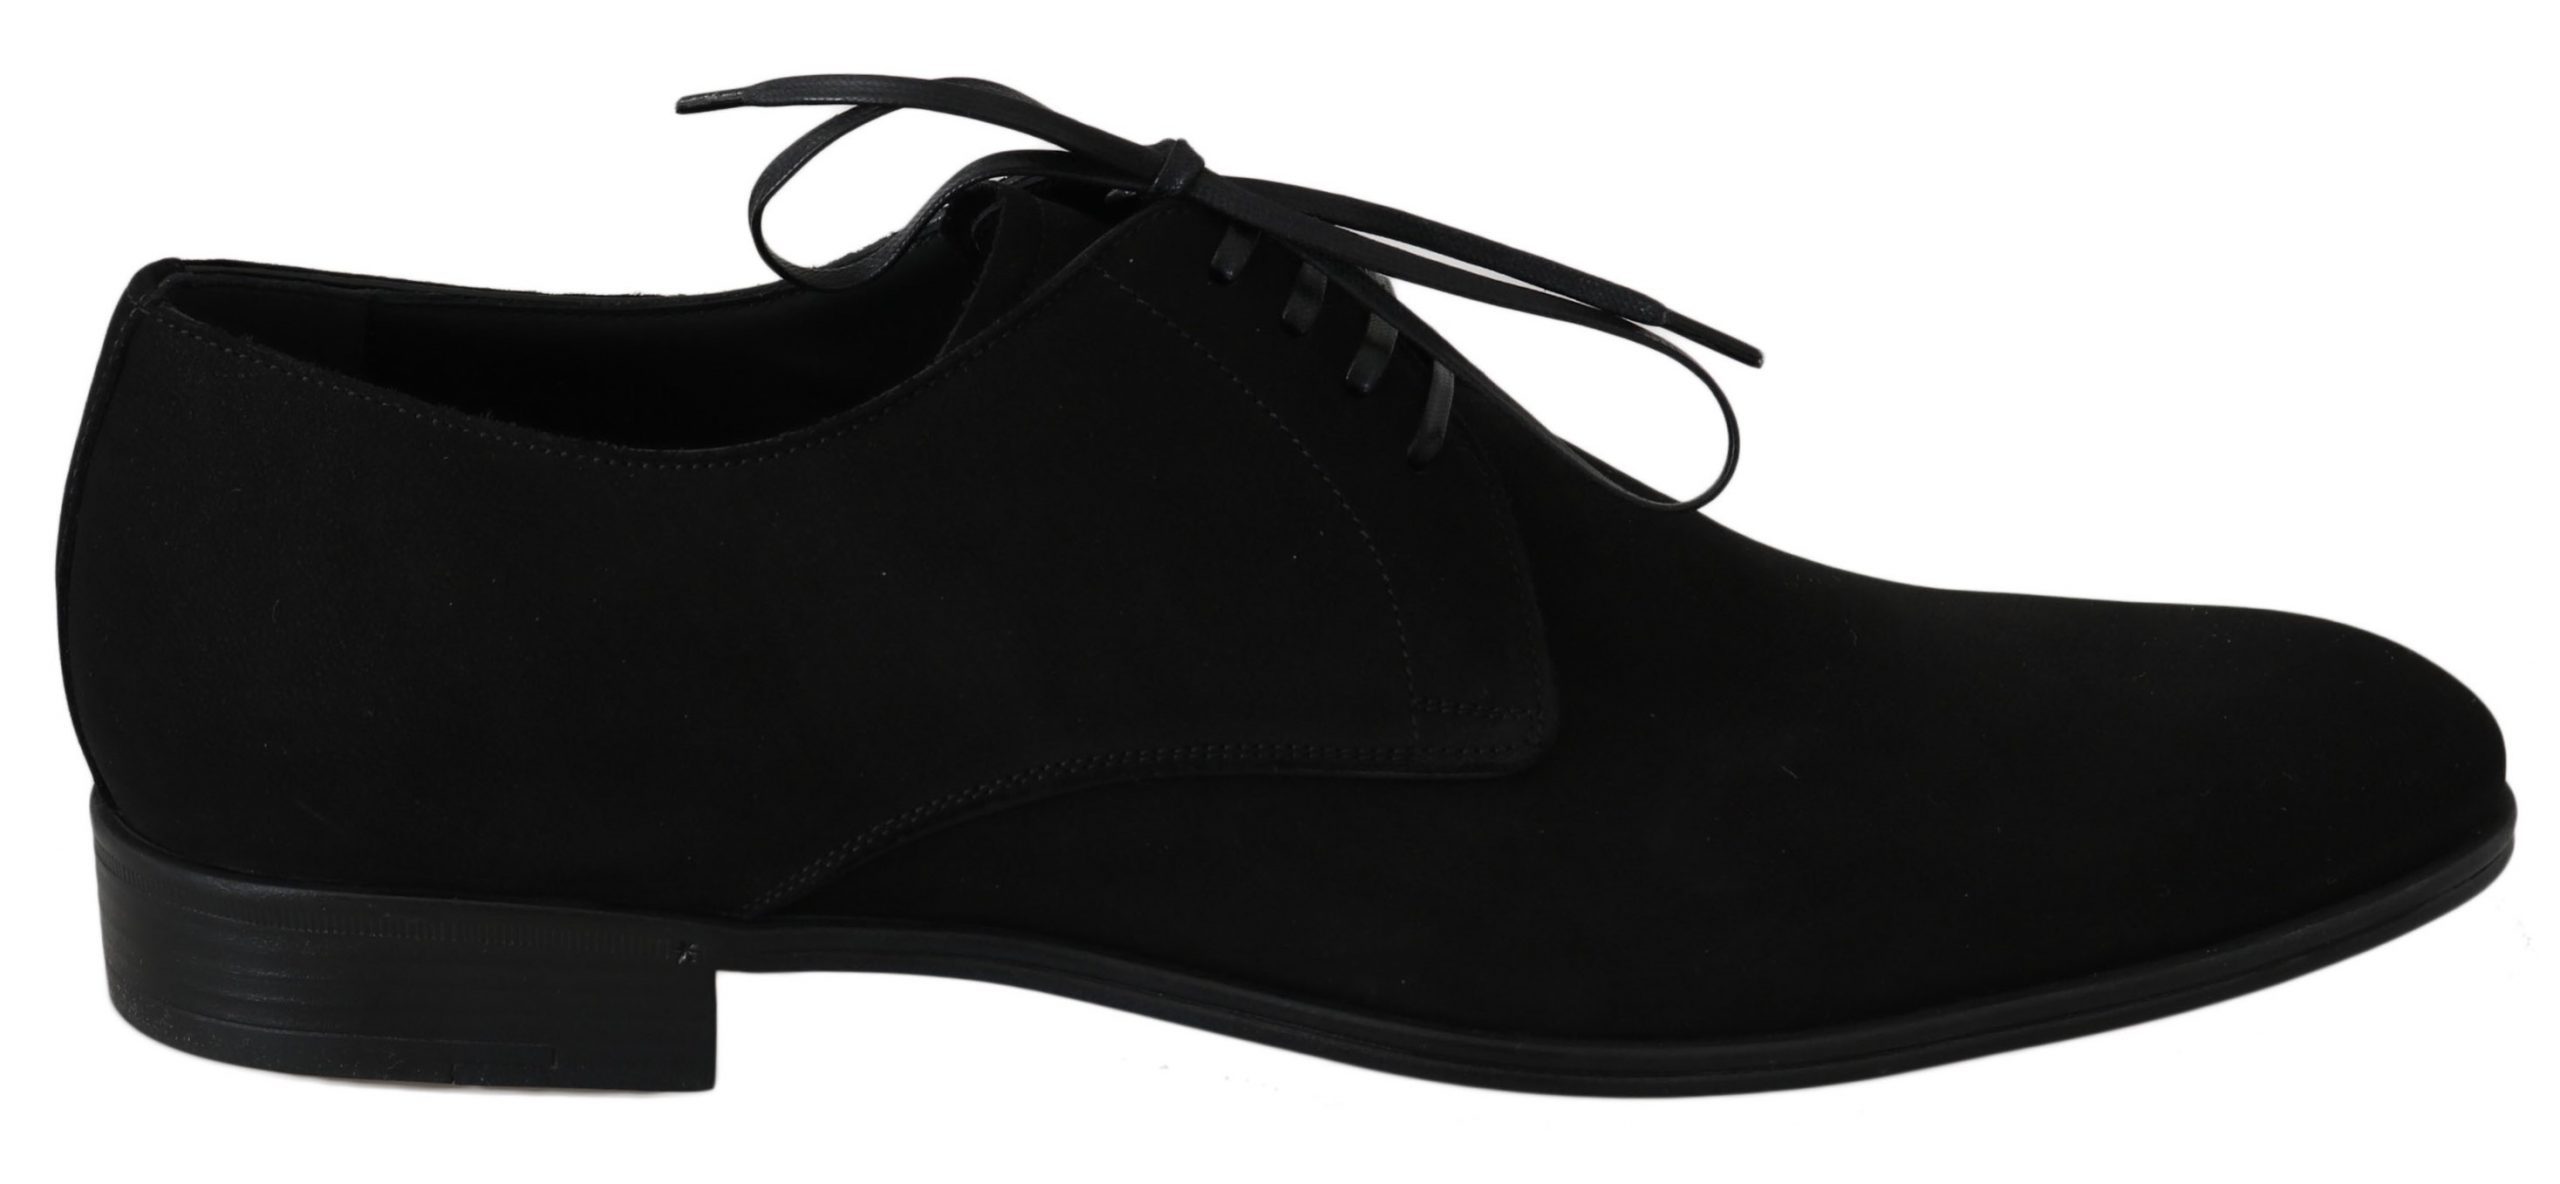 Dolce & Gabbana Men's Shoes Black MV2310 - EU41.5/US11.5